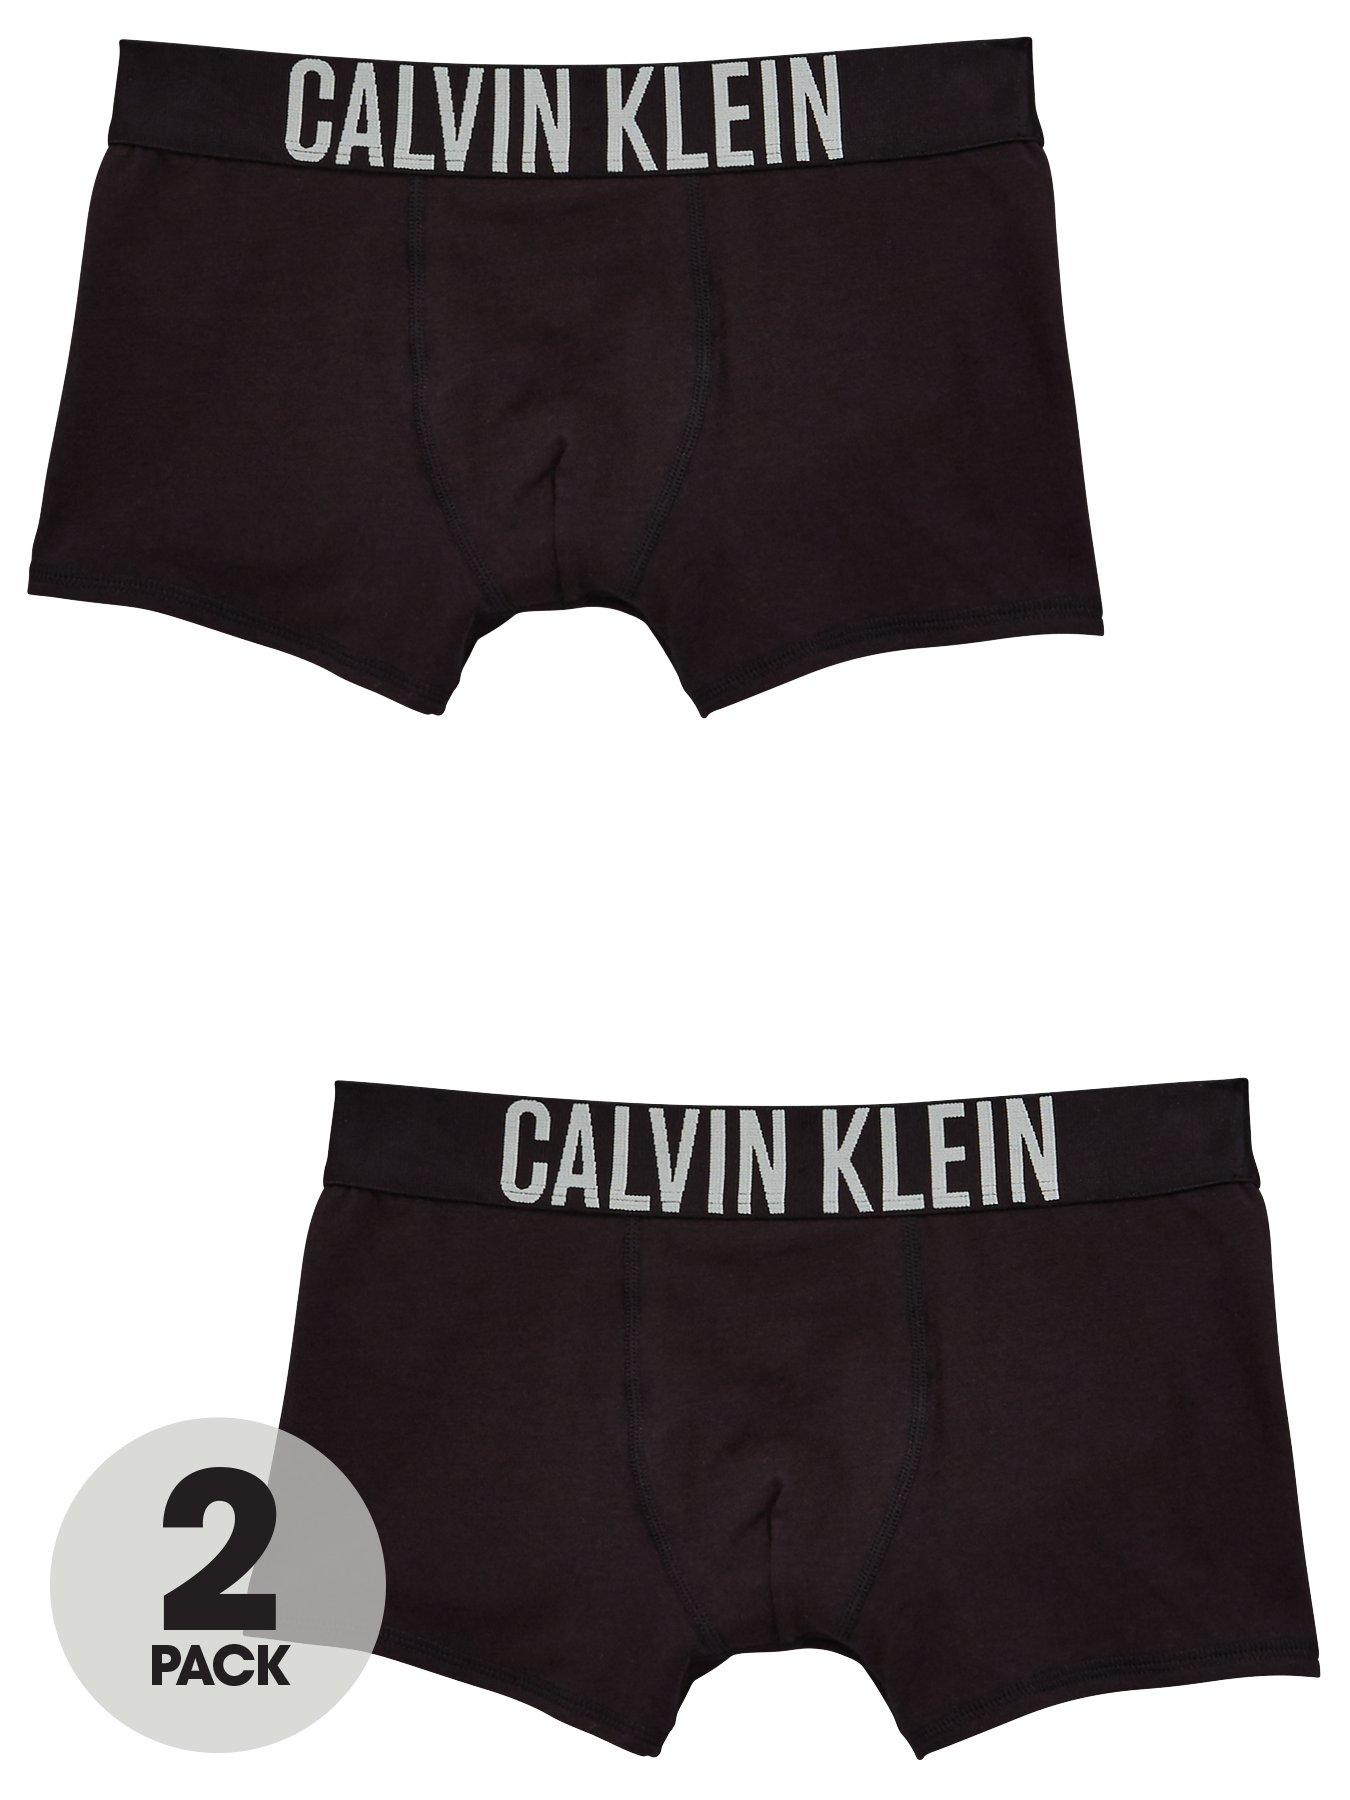 Calvin Klein Boys 2 Pack Trunks - Black 